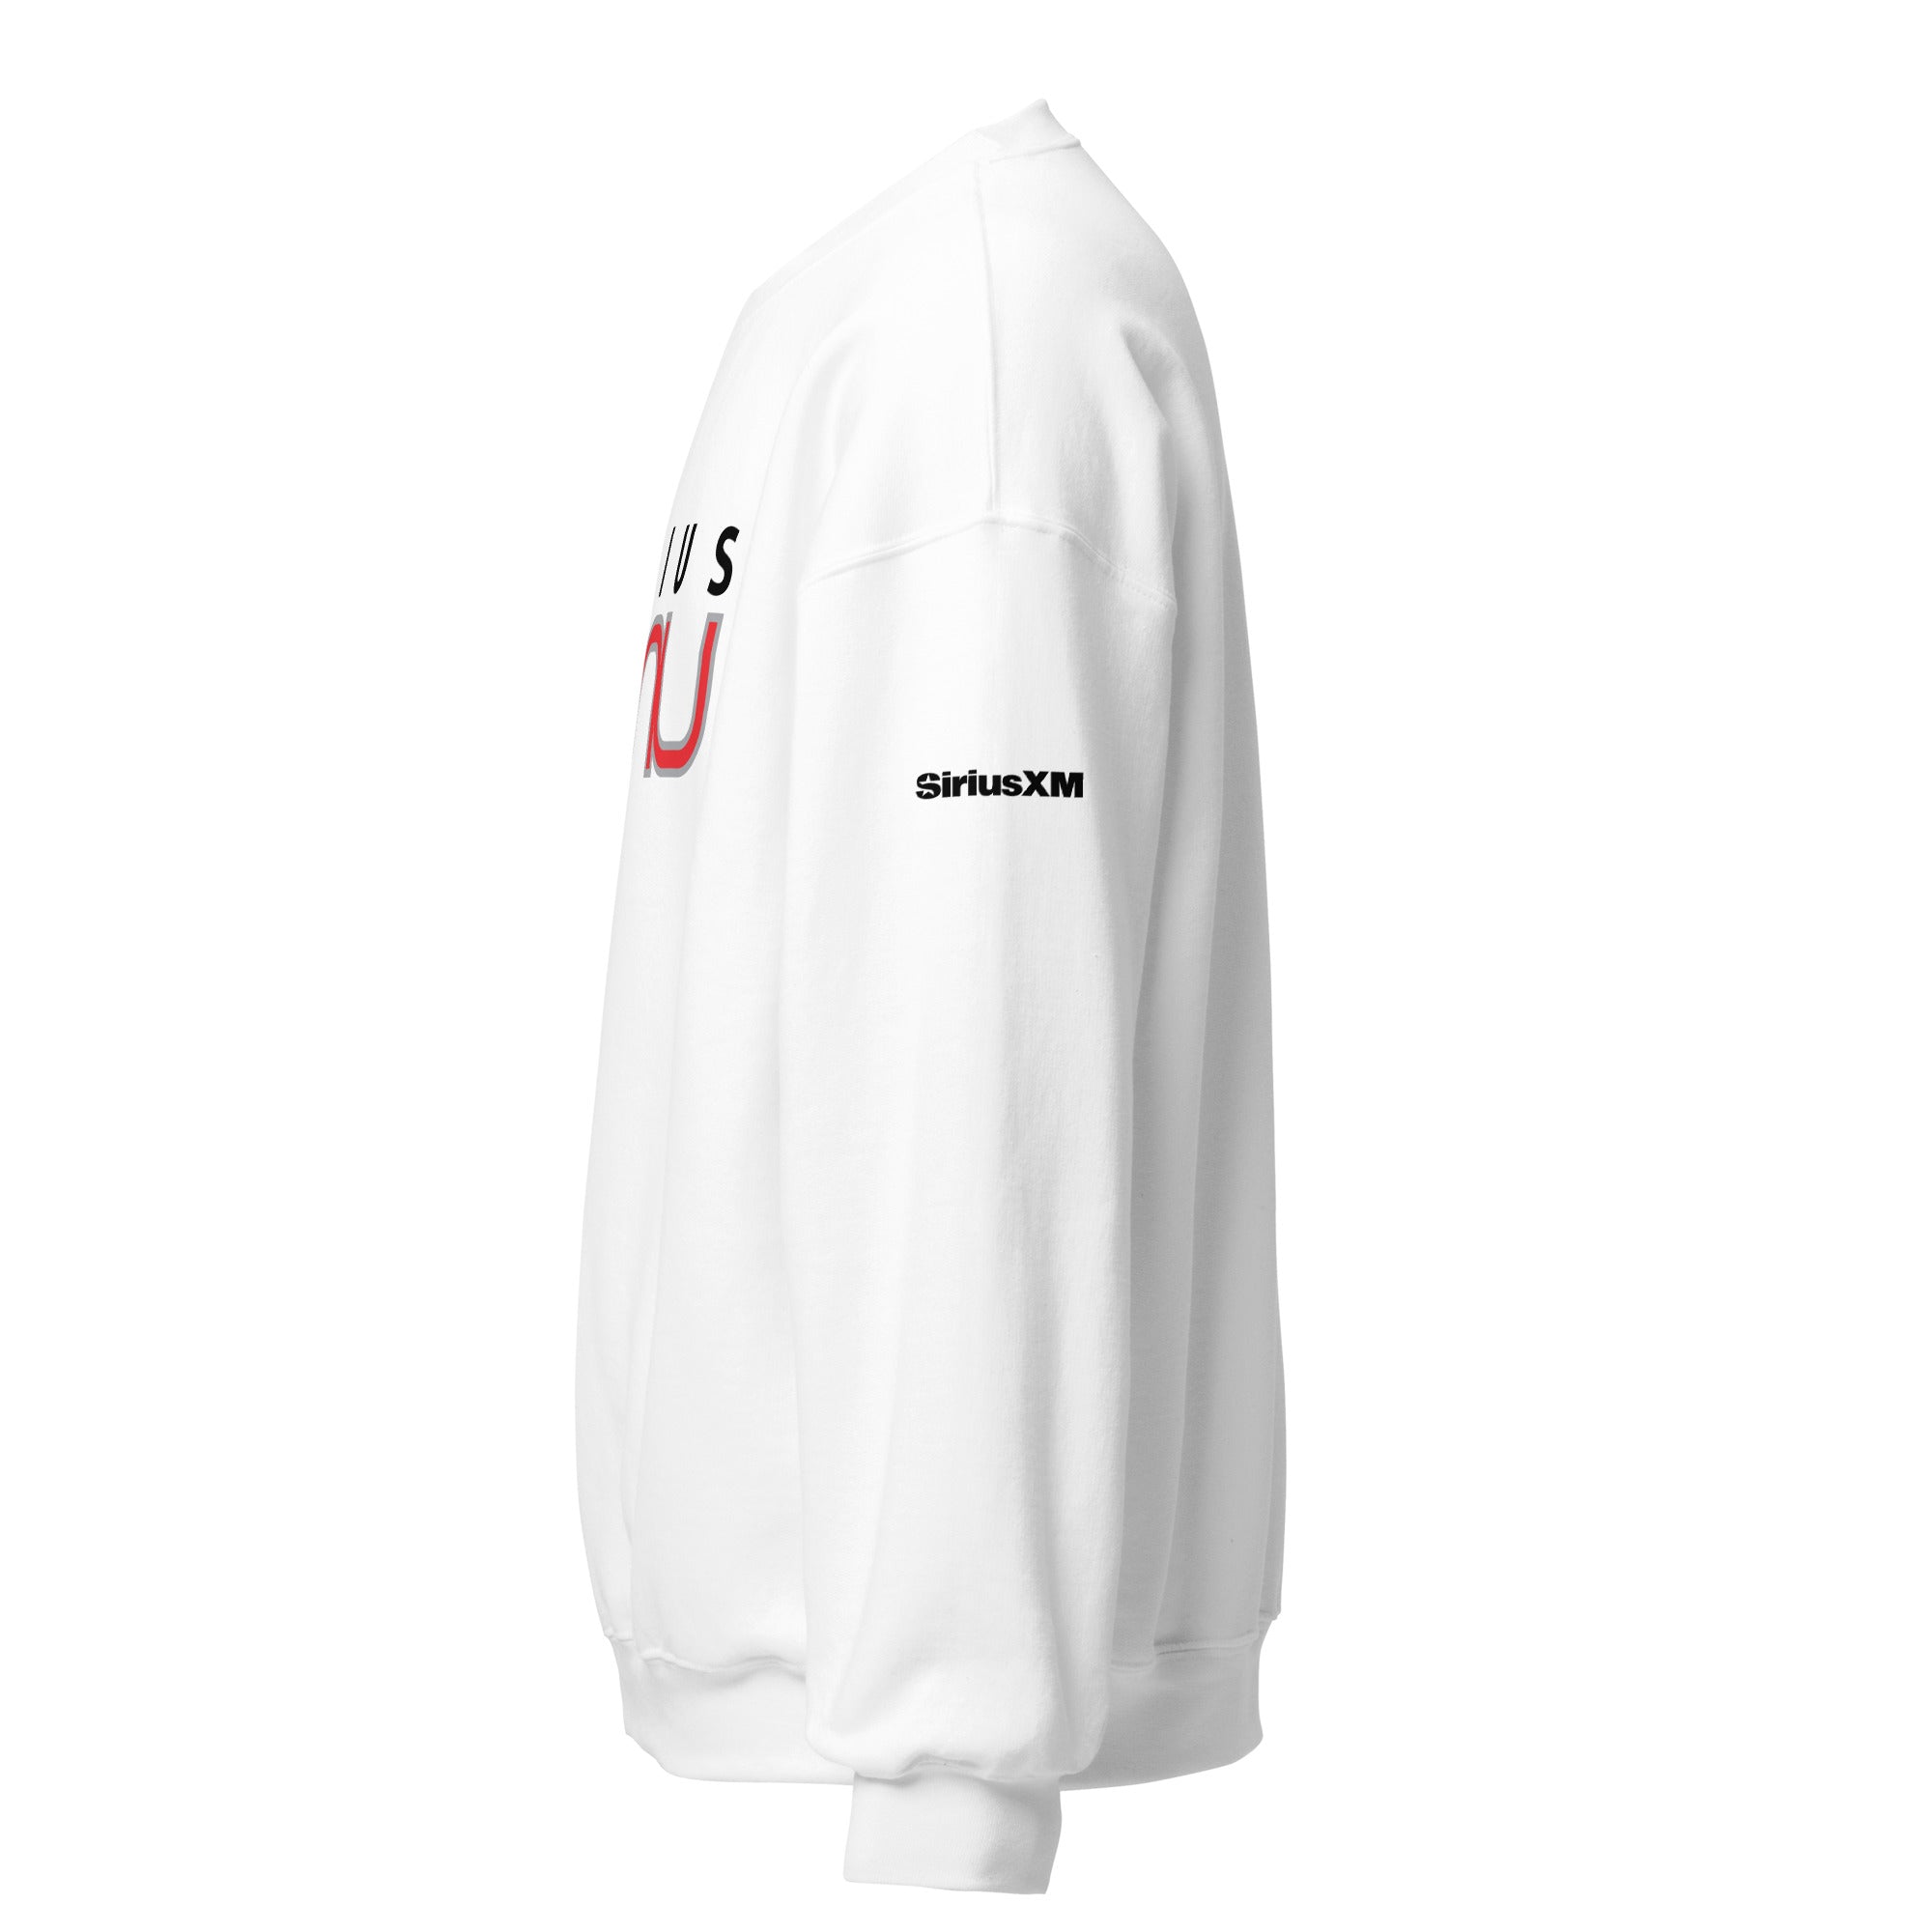 SiriusXMU: Sweatshirt (White)